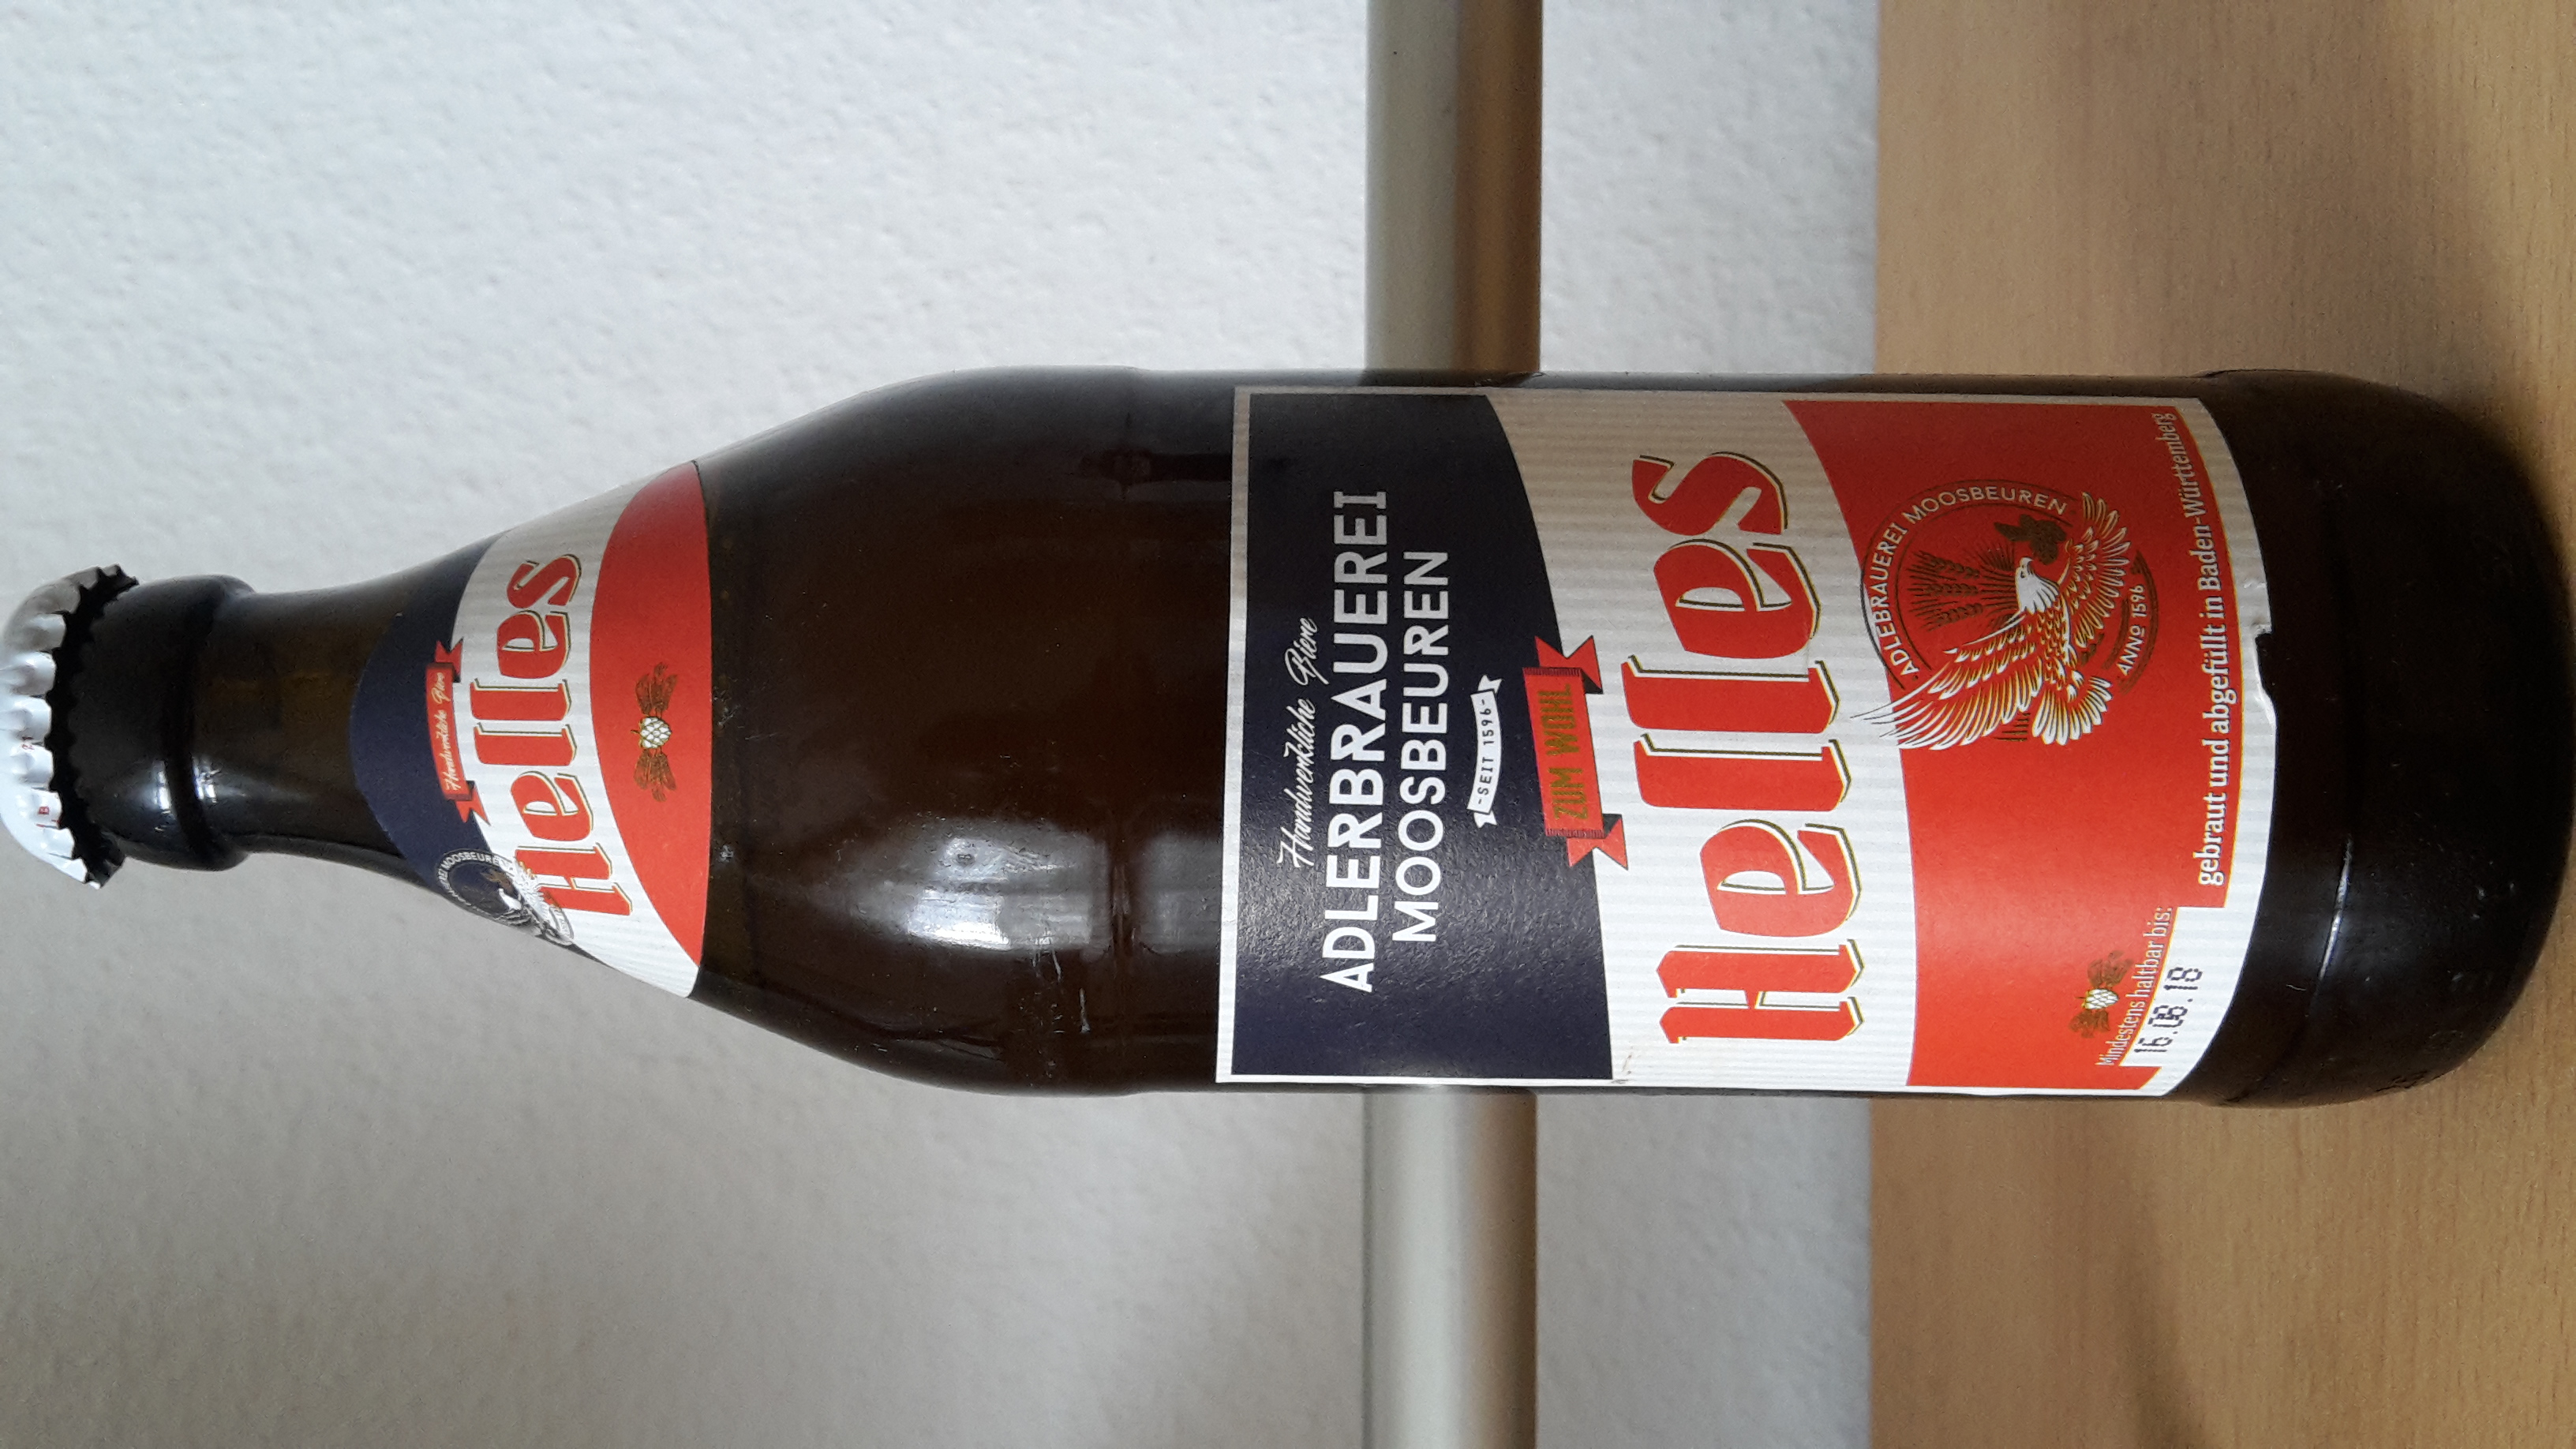 Gutes Bier in den bisherigen bauchigen Euroflaschen mit neuen Etiketten.